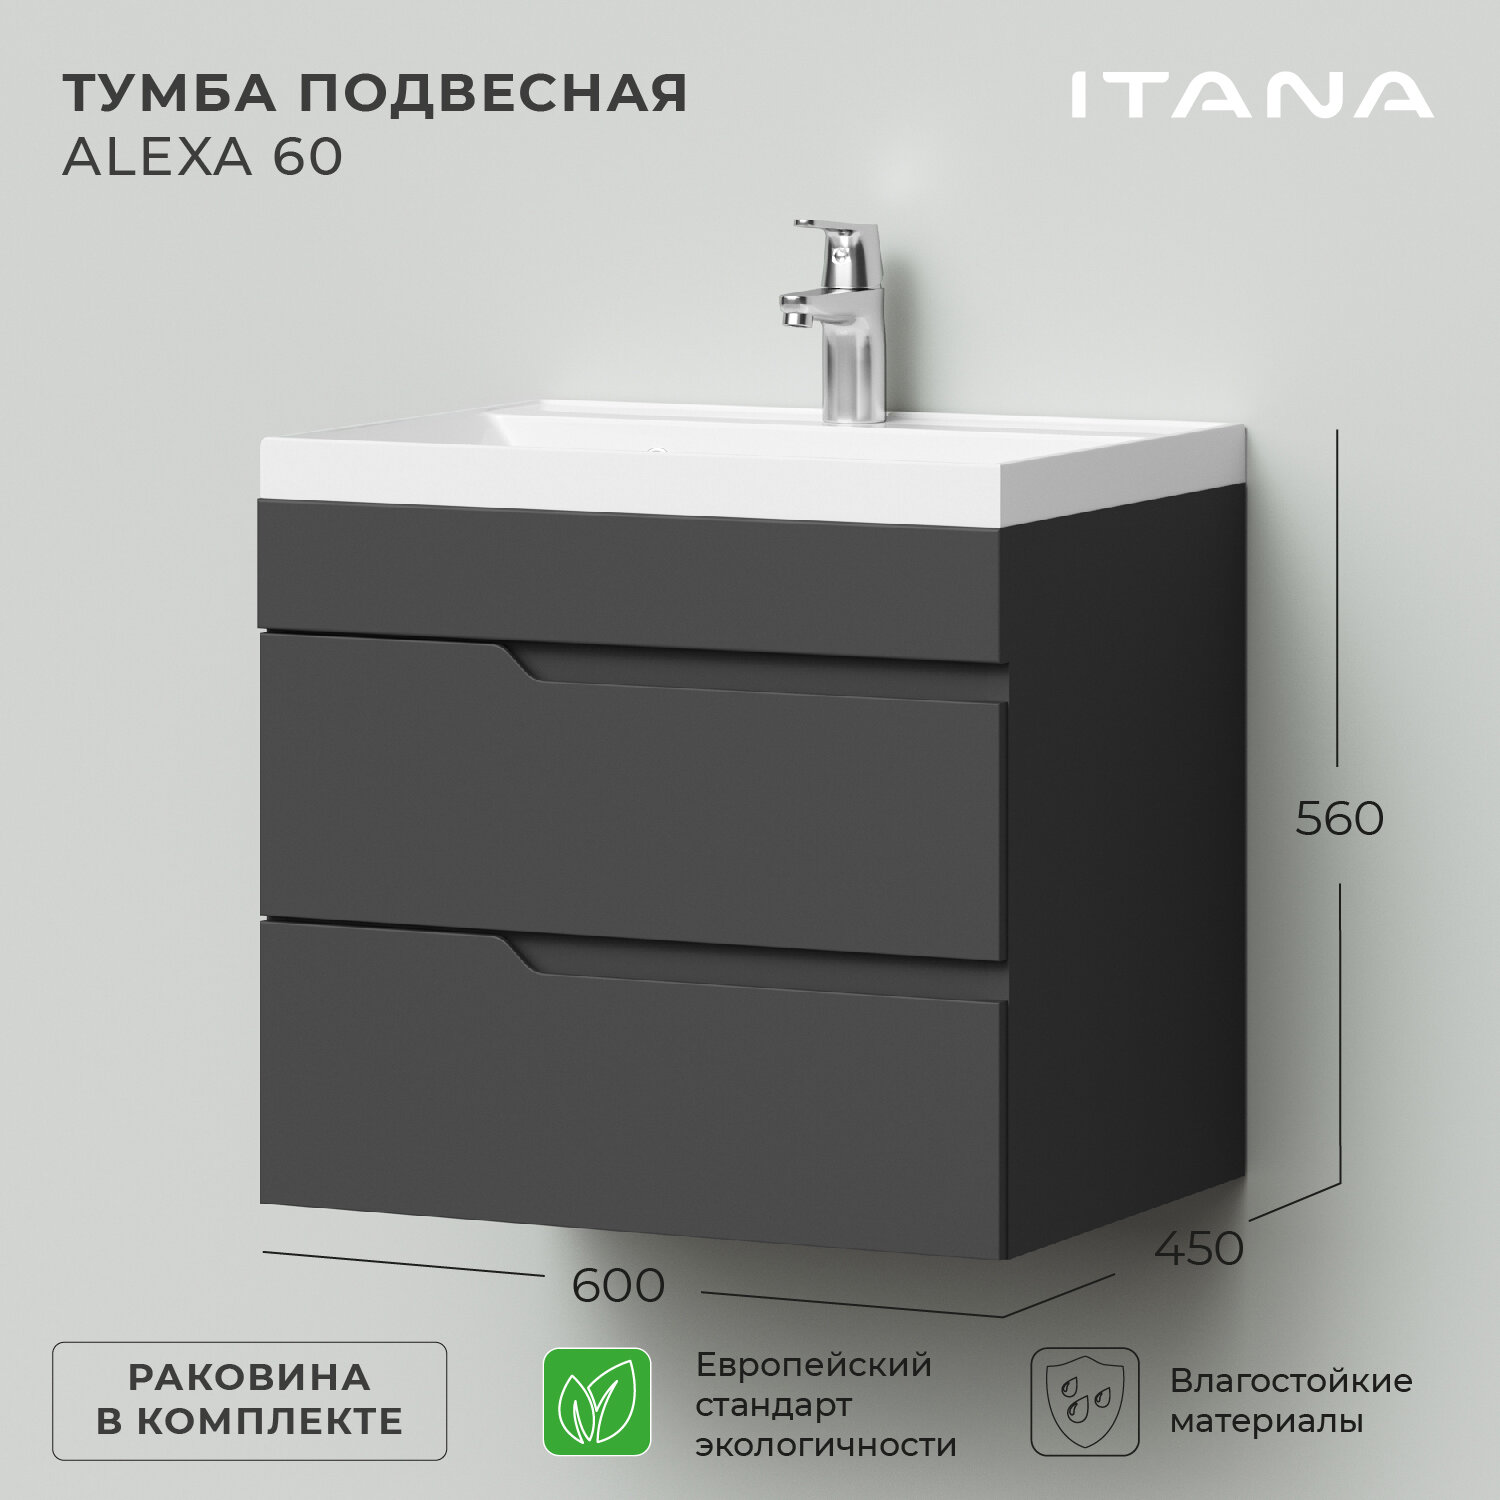 Тумба с раковиной в ванную / Тумба для ванной / Раковина с тумбой для ванной Итана Alexa 60 600х450х560 Графит подвесная